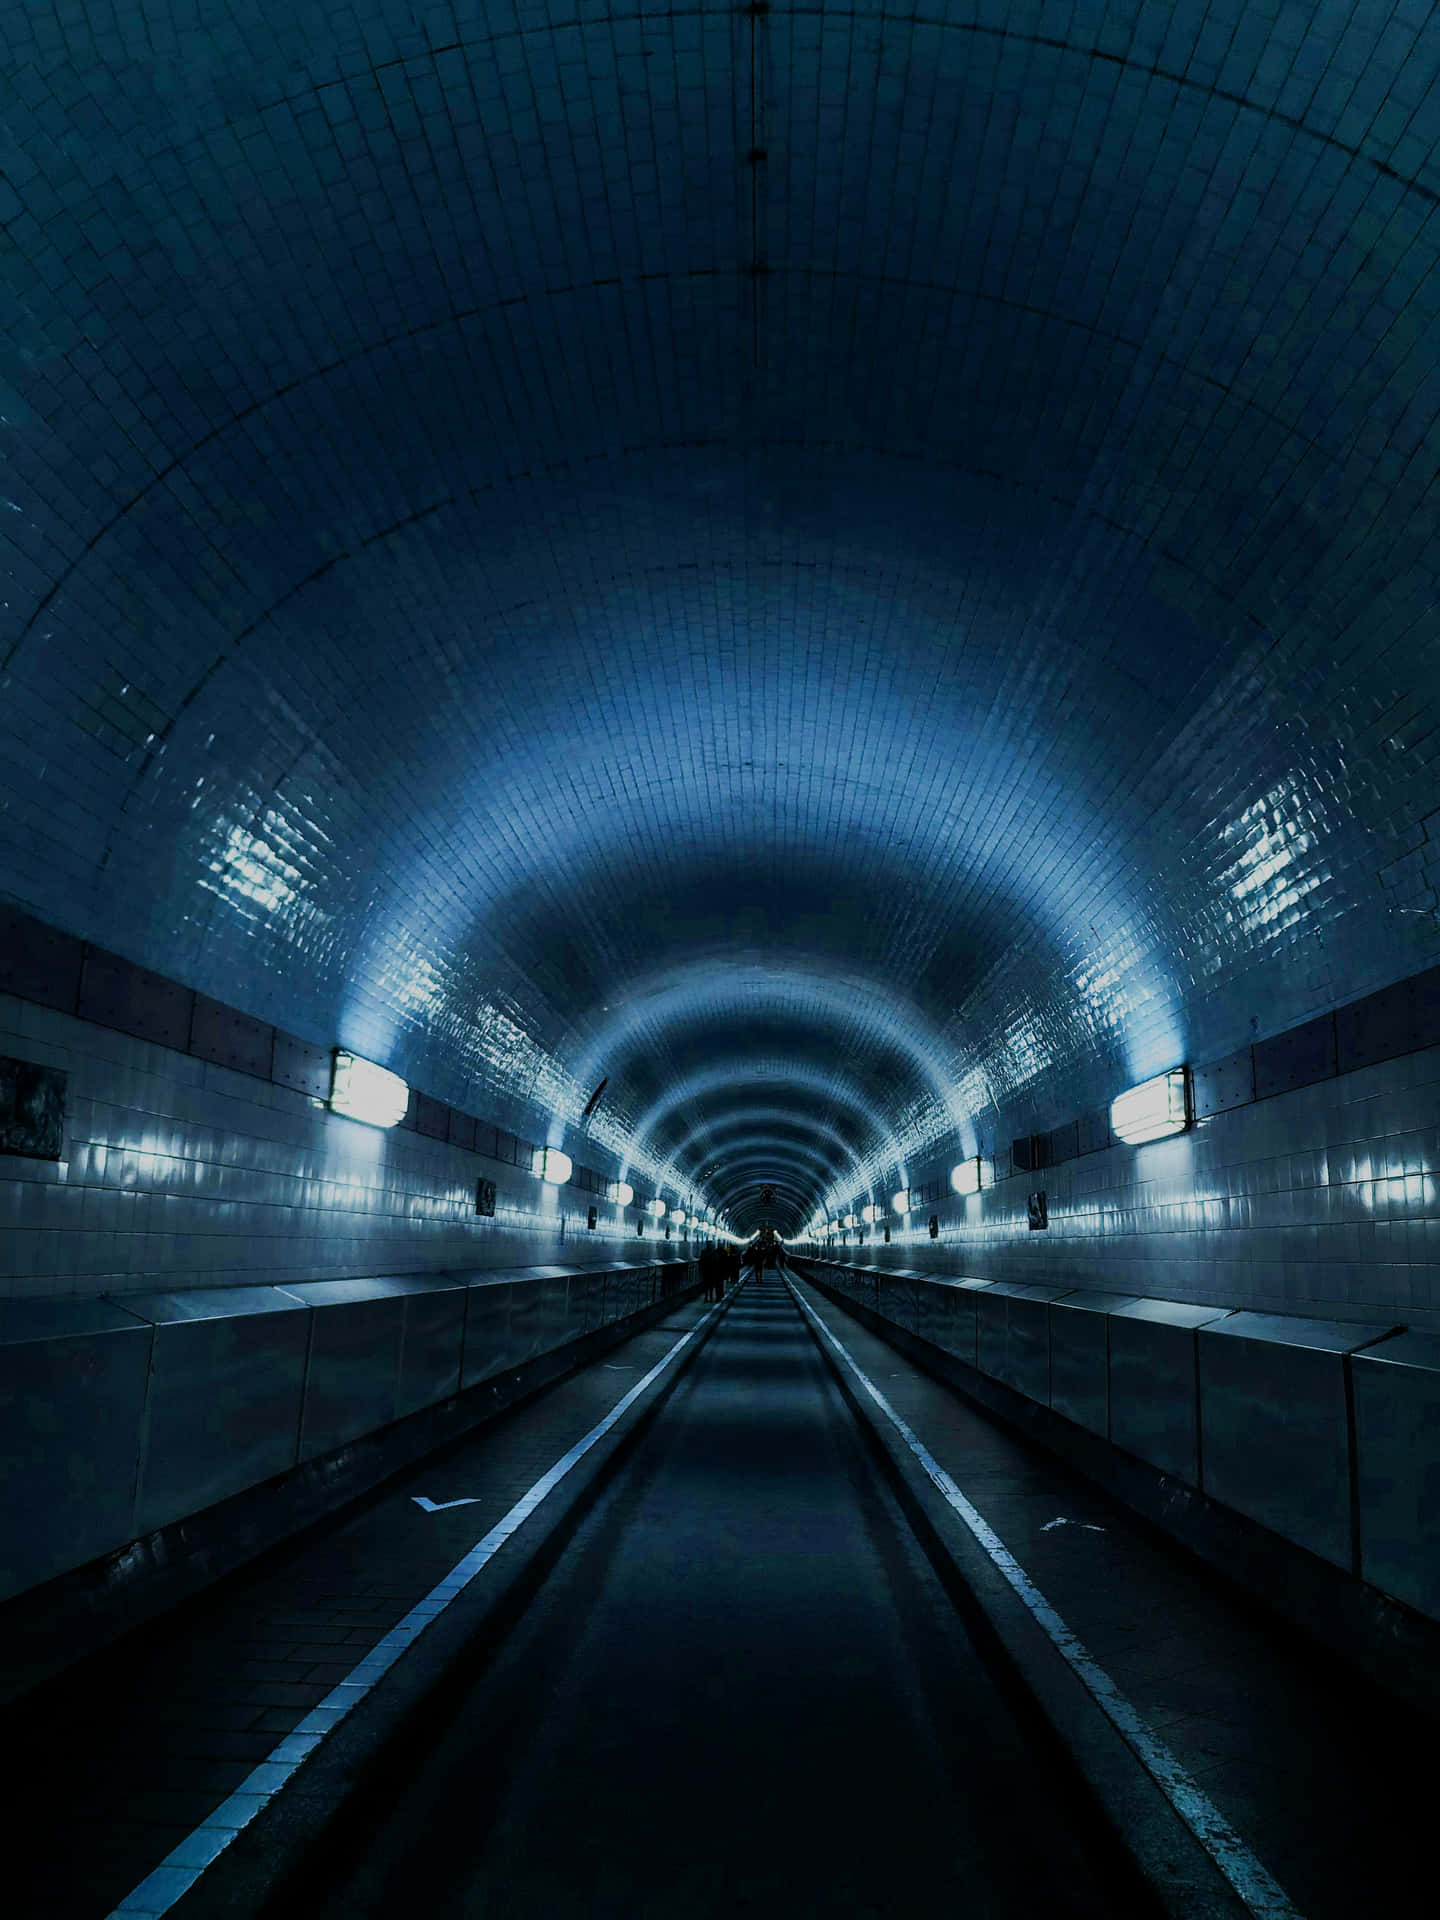 Illuminated Underground Tunnel Perspective.jpg Wallpaper